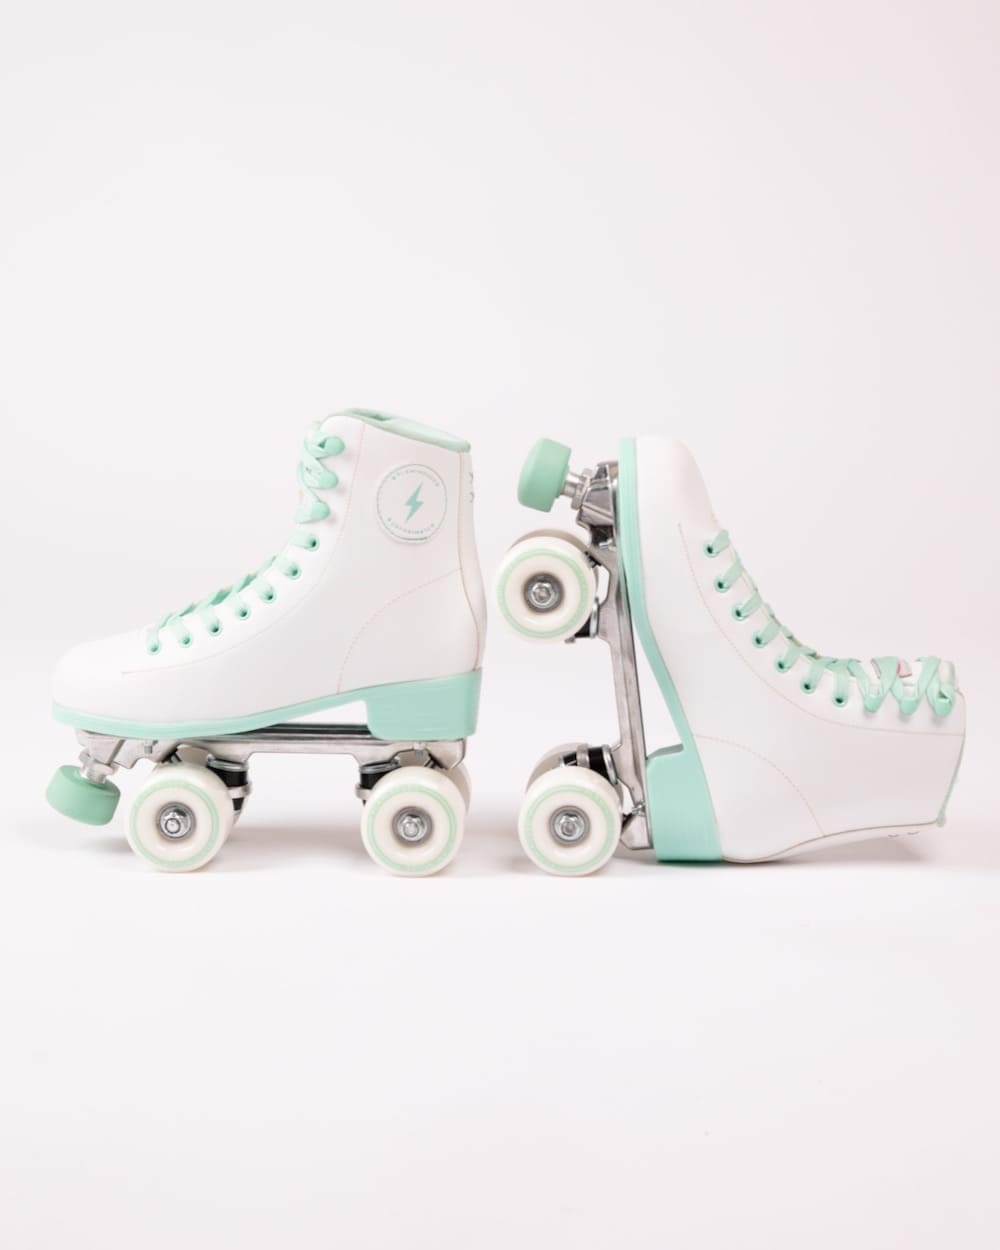 patines 4 ruedas verde menta y blanco